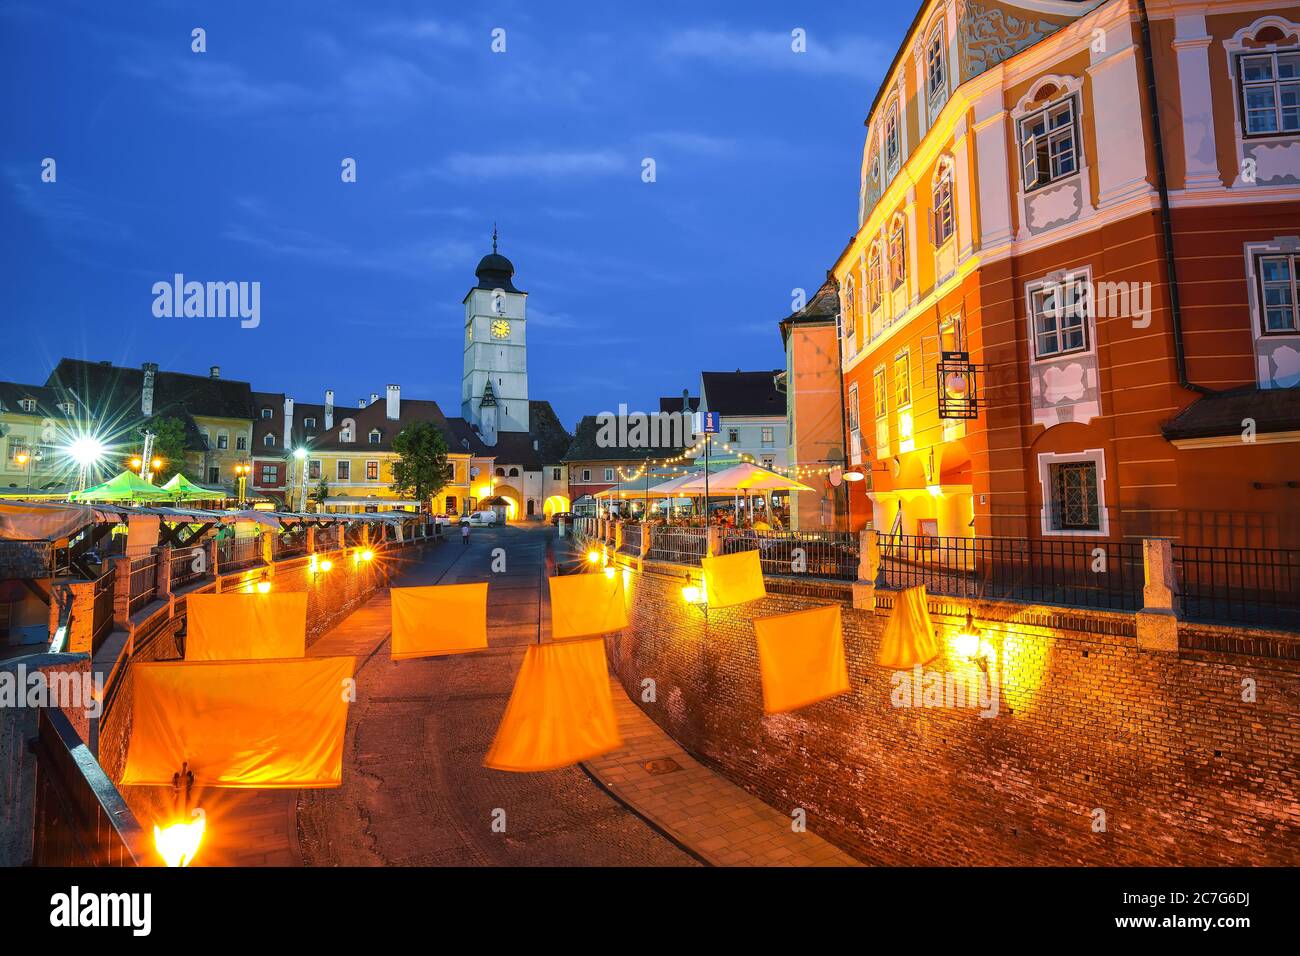 Kleiner Platz und Rathausturm bei Dämmerung. Siebenbürgen sächsische Stadt. Stadtbild der Stadt Sibiu, Siebenbürgen, Rumänien, Europa Stockfoto